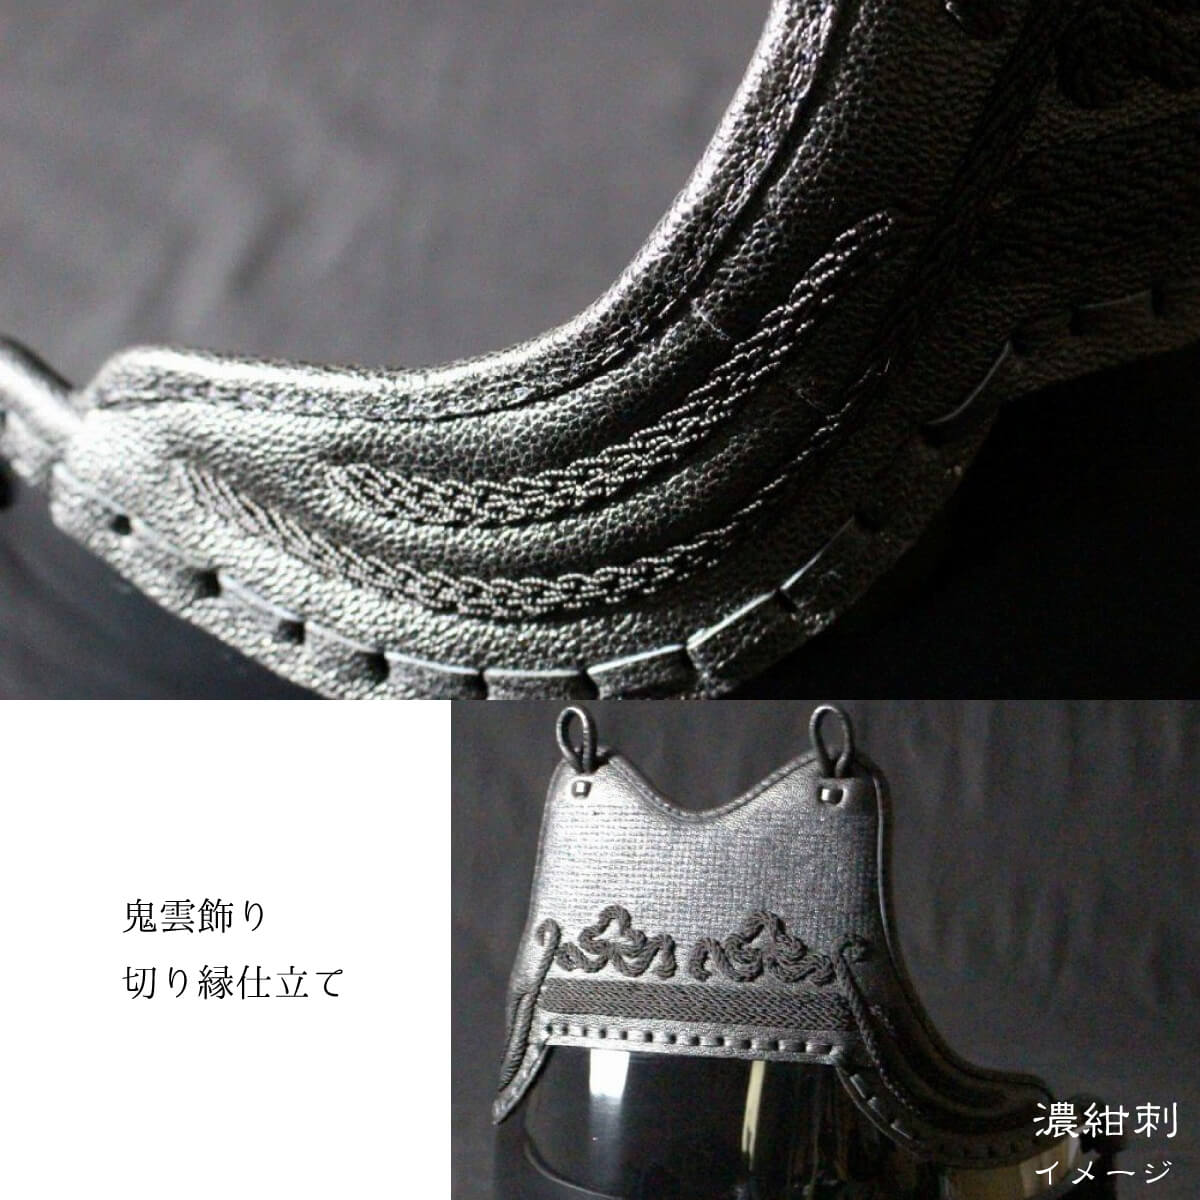 【 006K 】 剣道 カスタム胴（中・大）カラー樹脂胴台 Ｋカラー 胸飾り4種